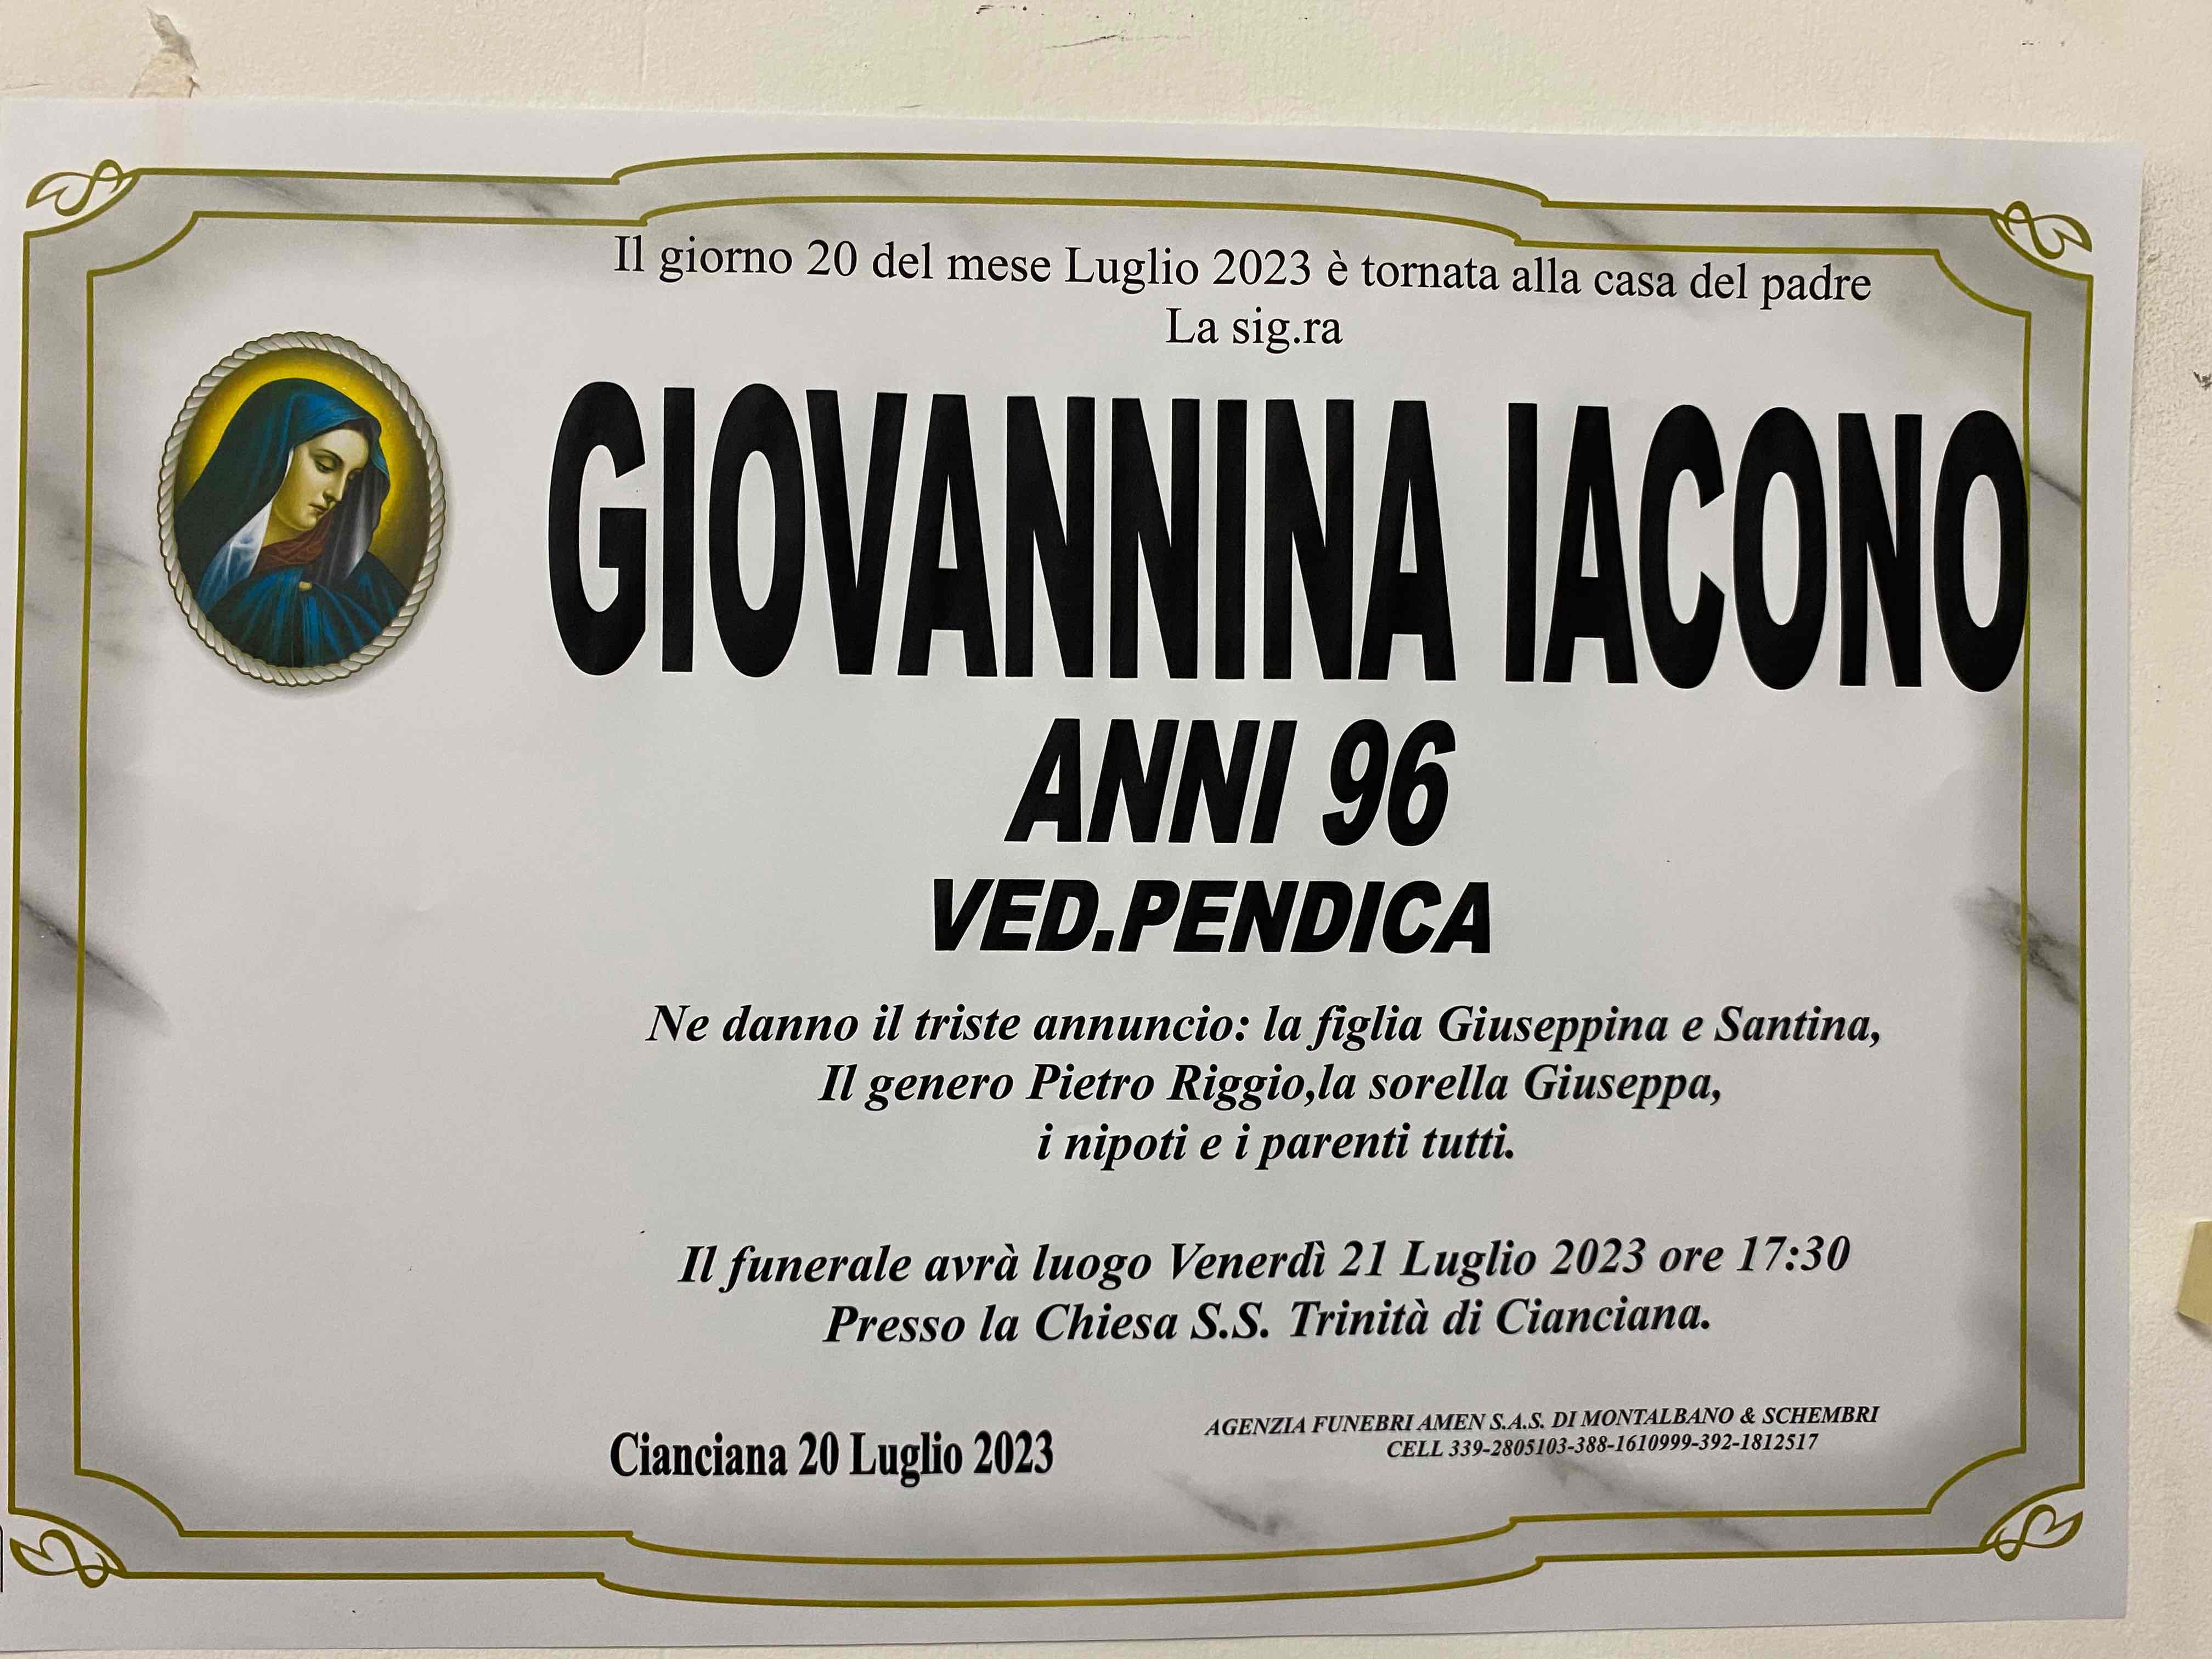 Giovannina Iacono